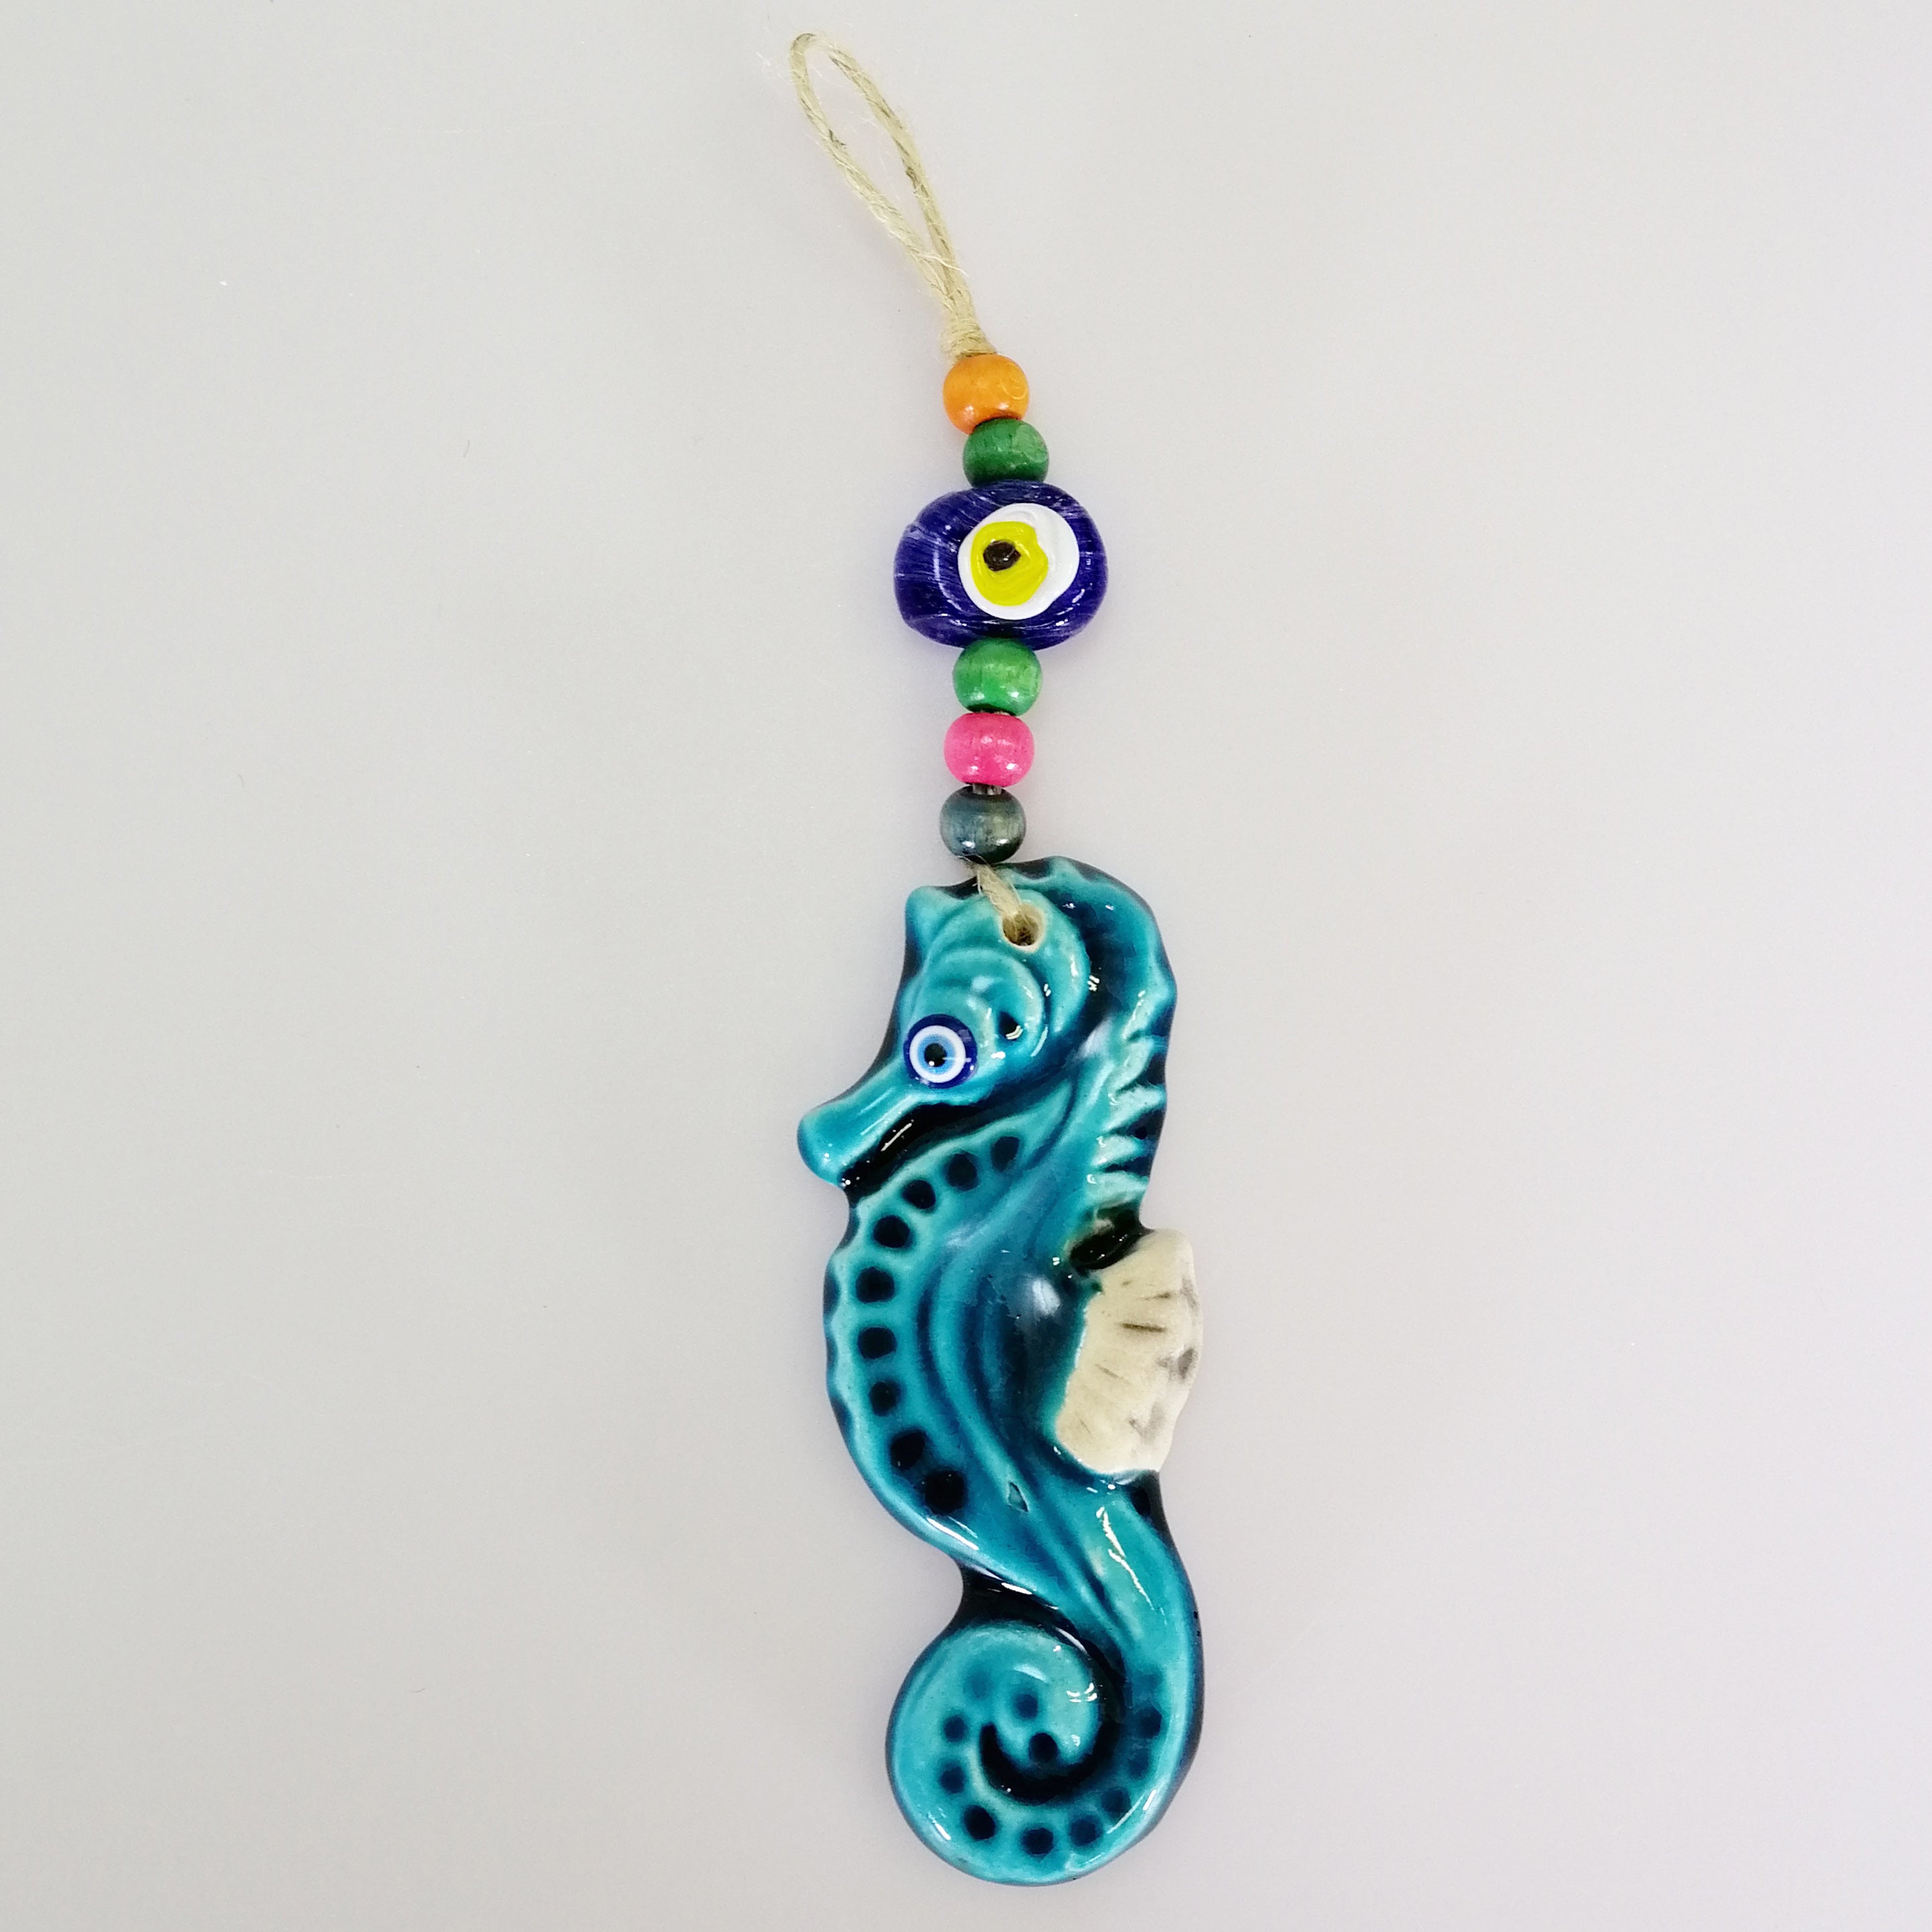 Turkish Ceramic Hanging Ornament - Seahorse